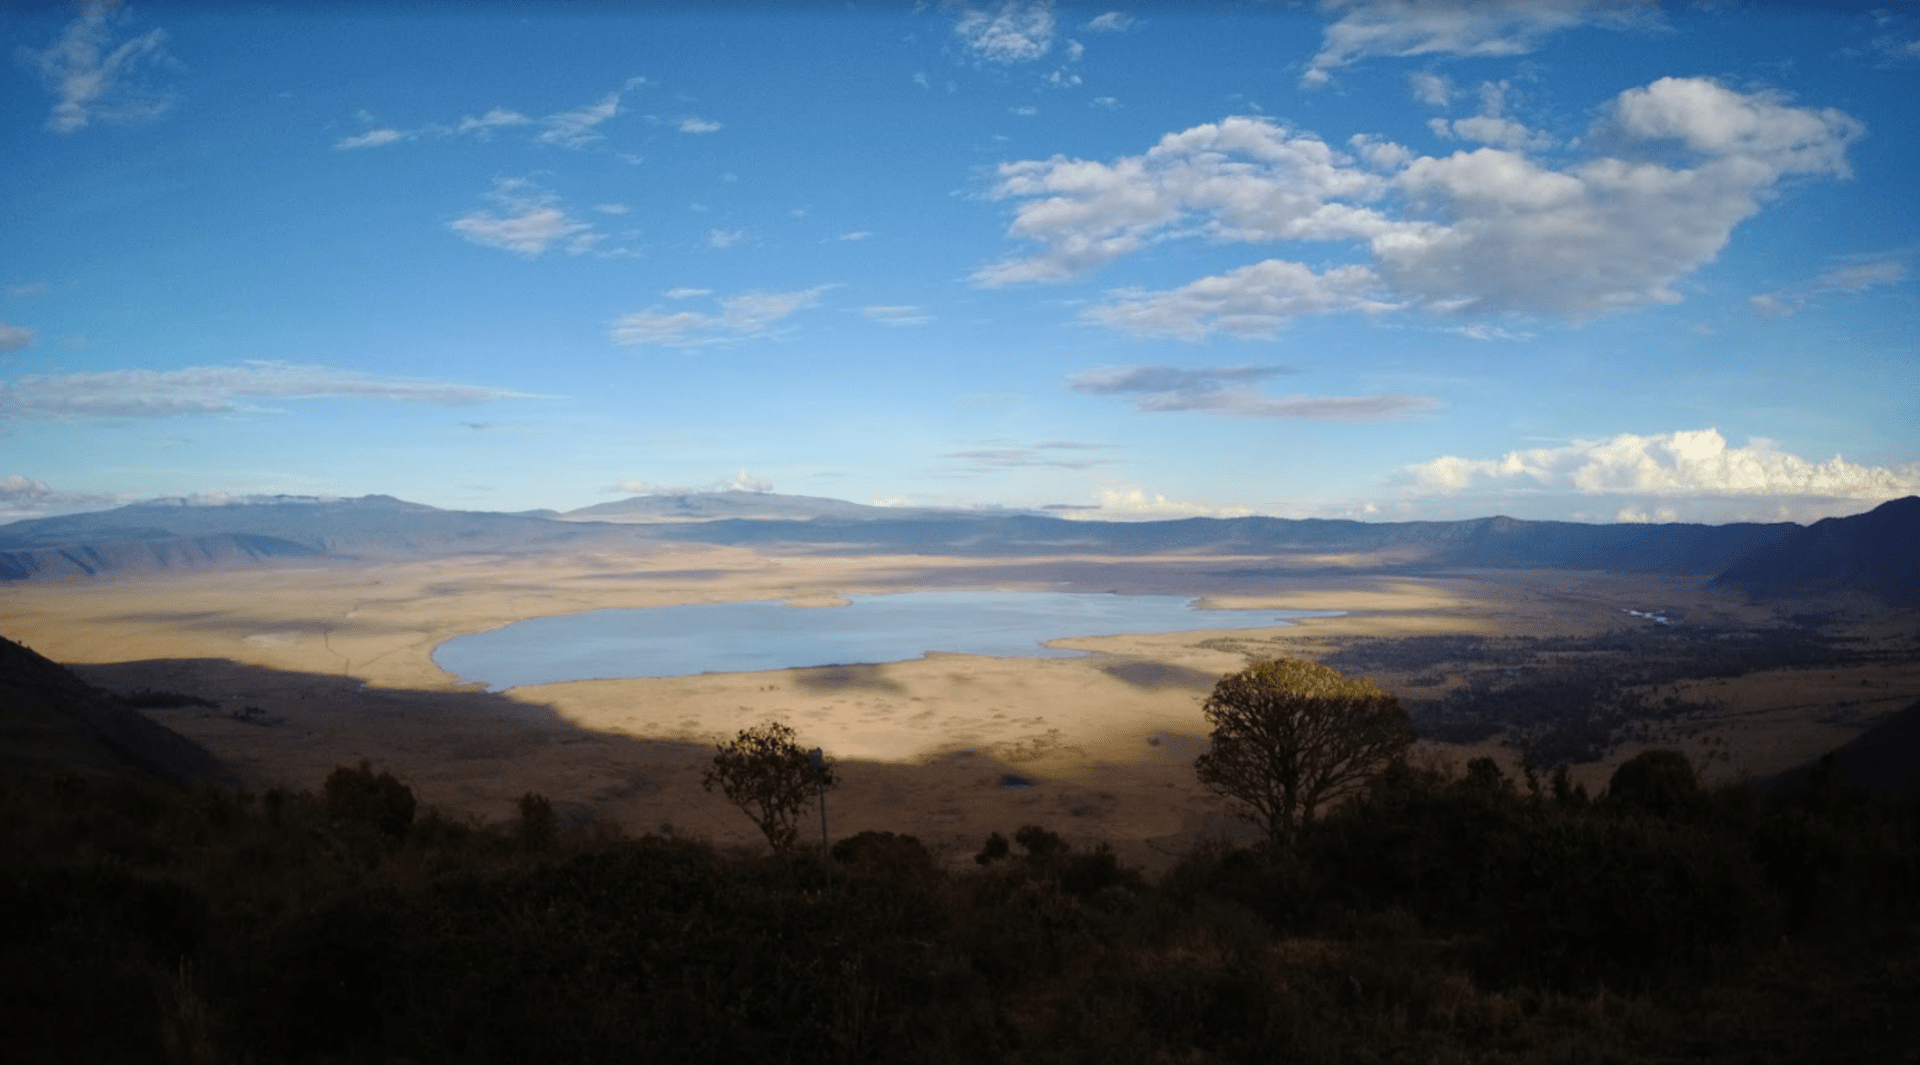 Landscape photo of the Ngorongoro Crater